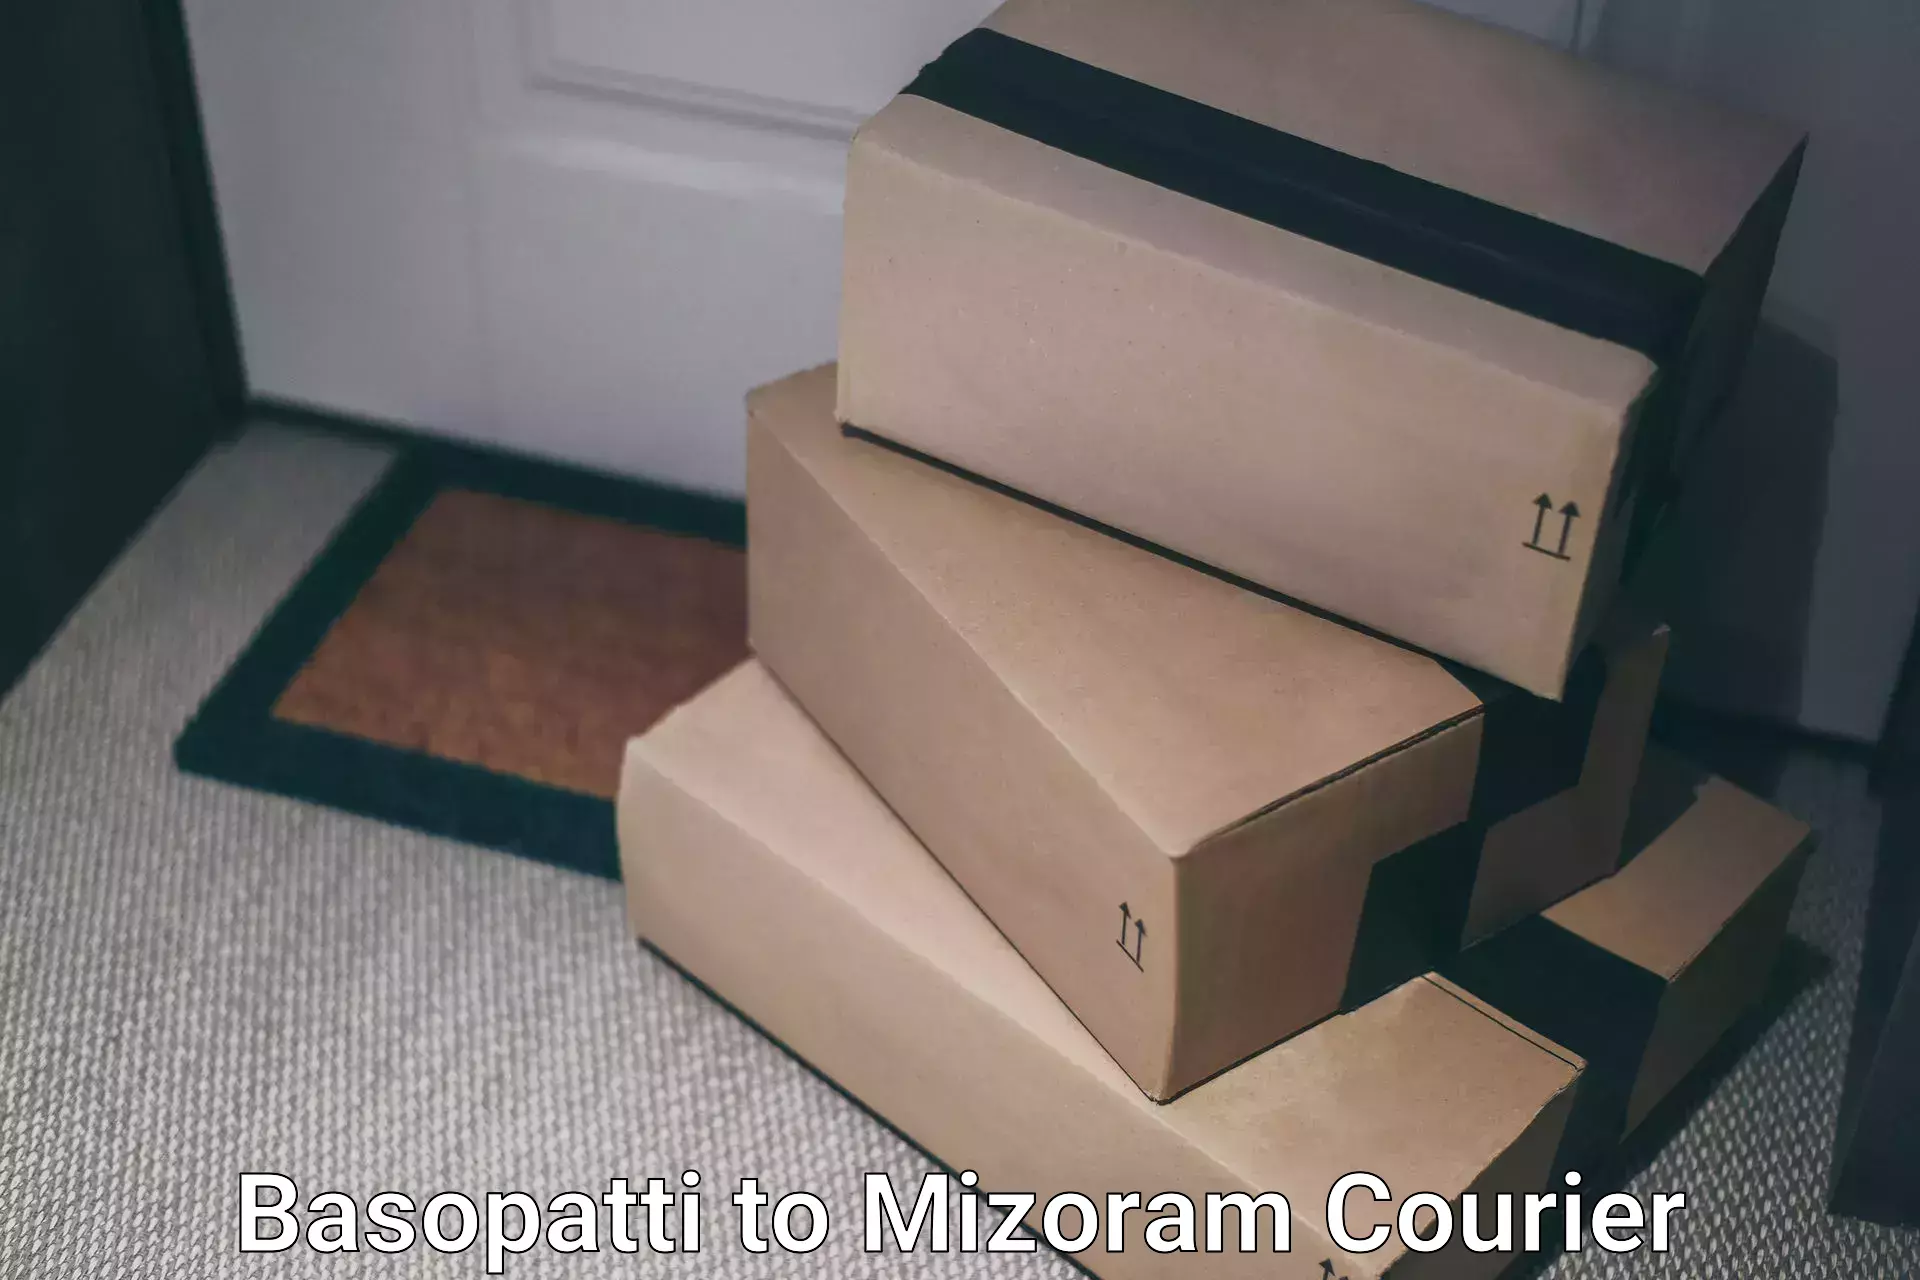 Door-to-door freight service Basopatti to Mizoram